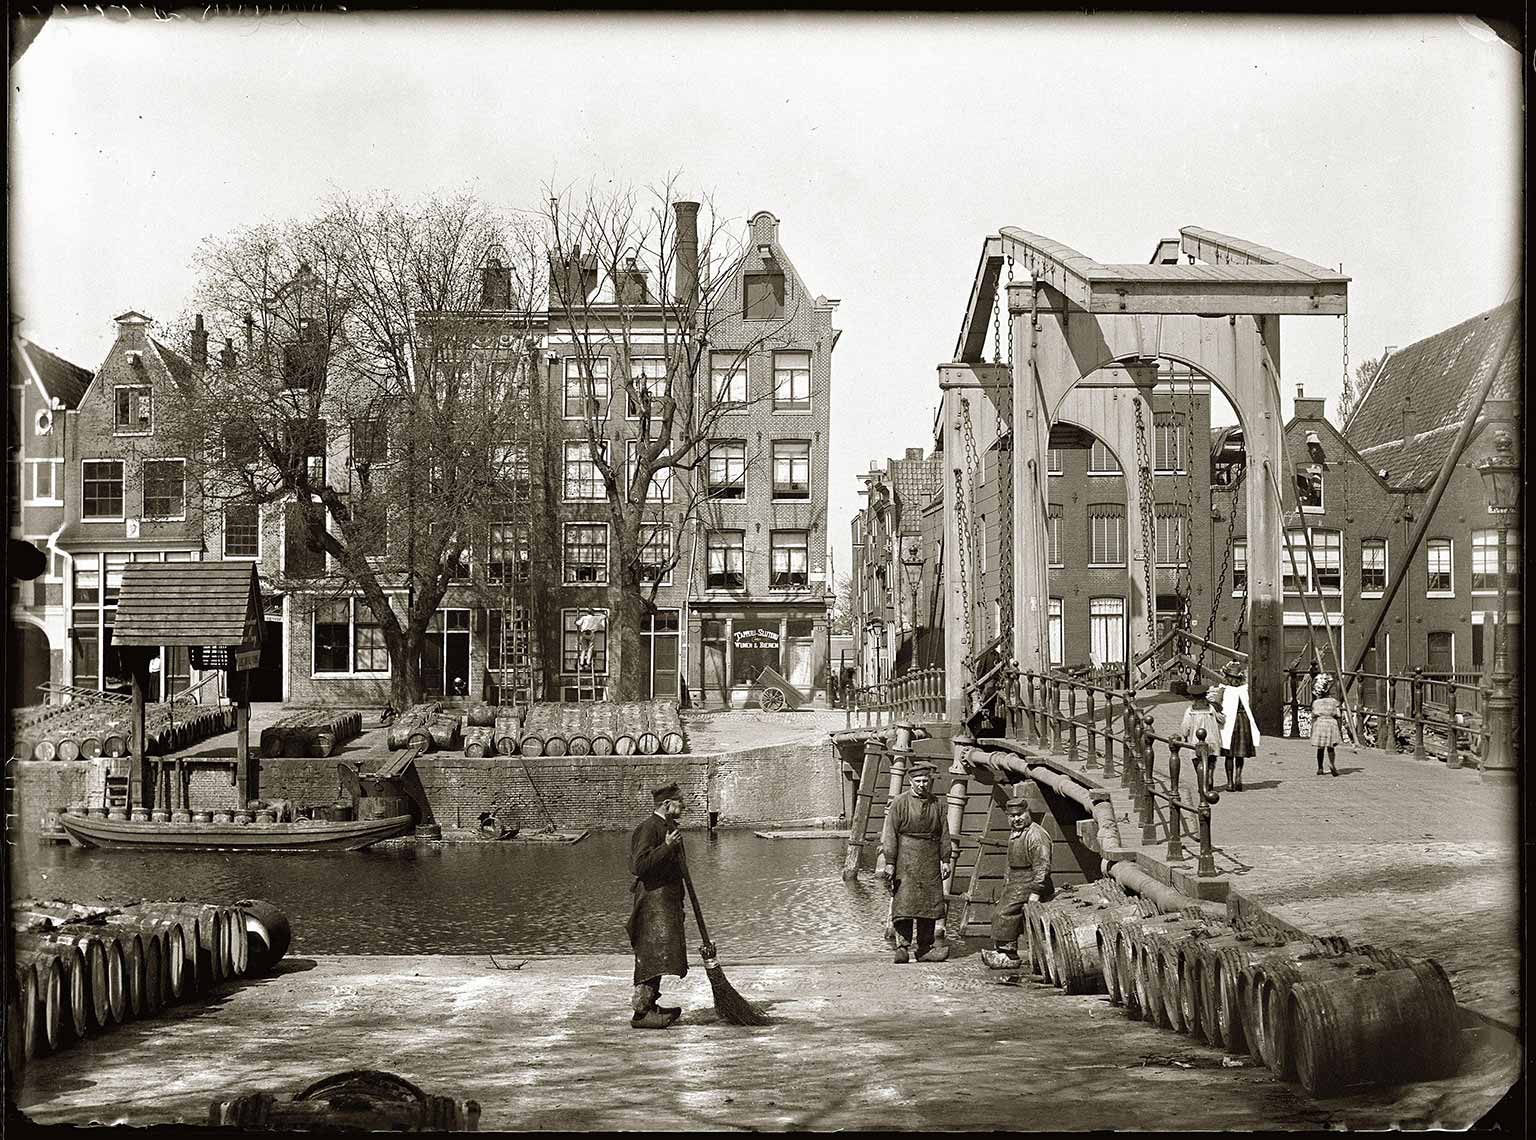 Nieuwe Teertuinen with Sloterdijkerbrug, Amsterdam, in 1890